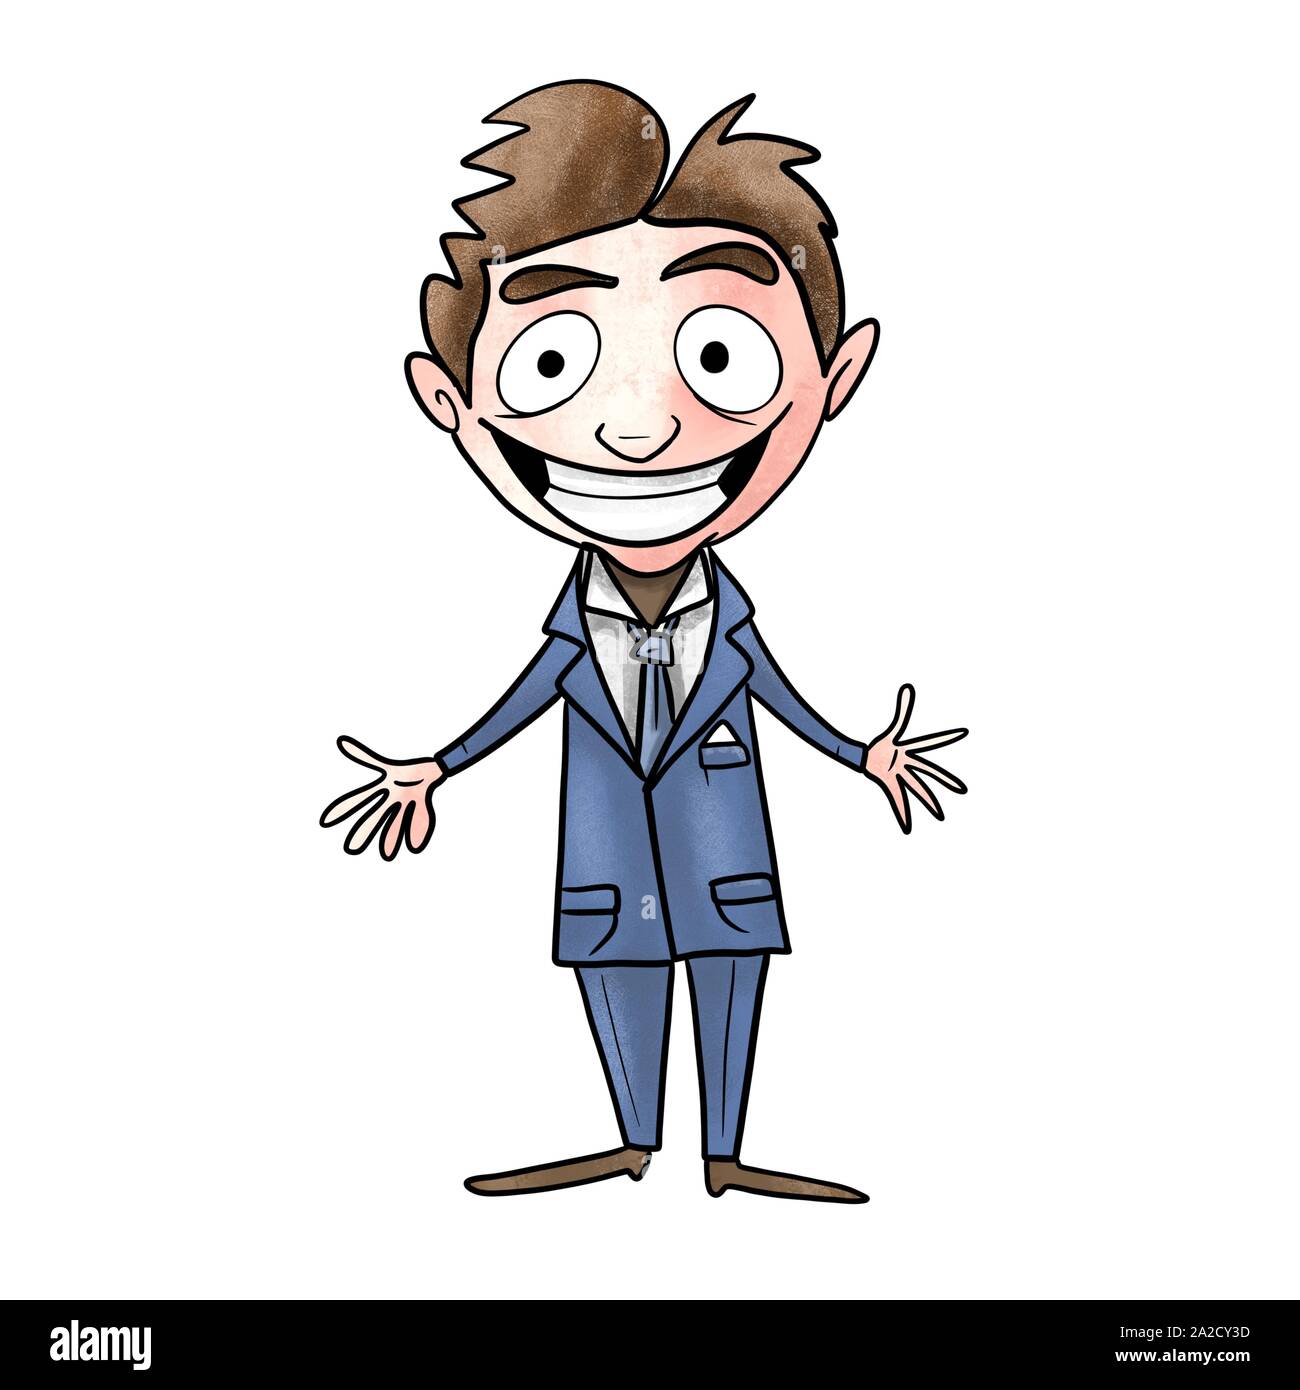 successful man in a suit cartoon Stock Photo - Alamy